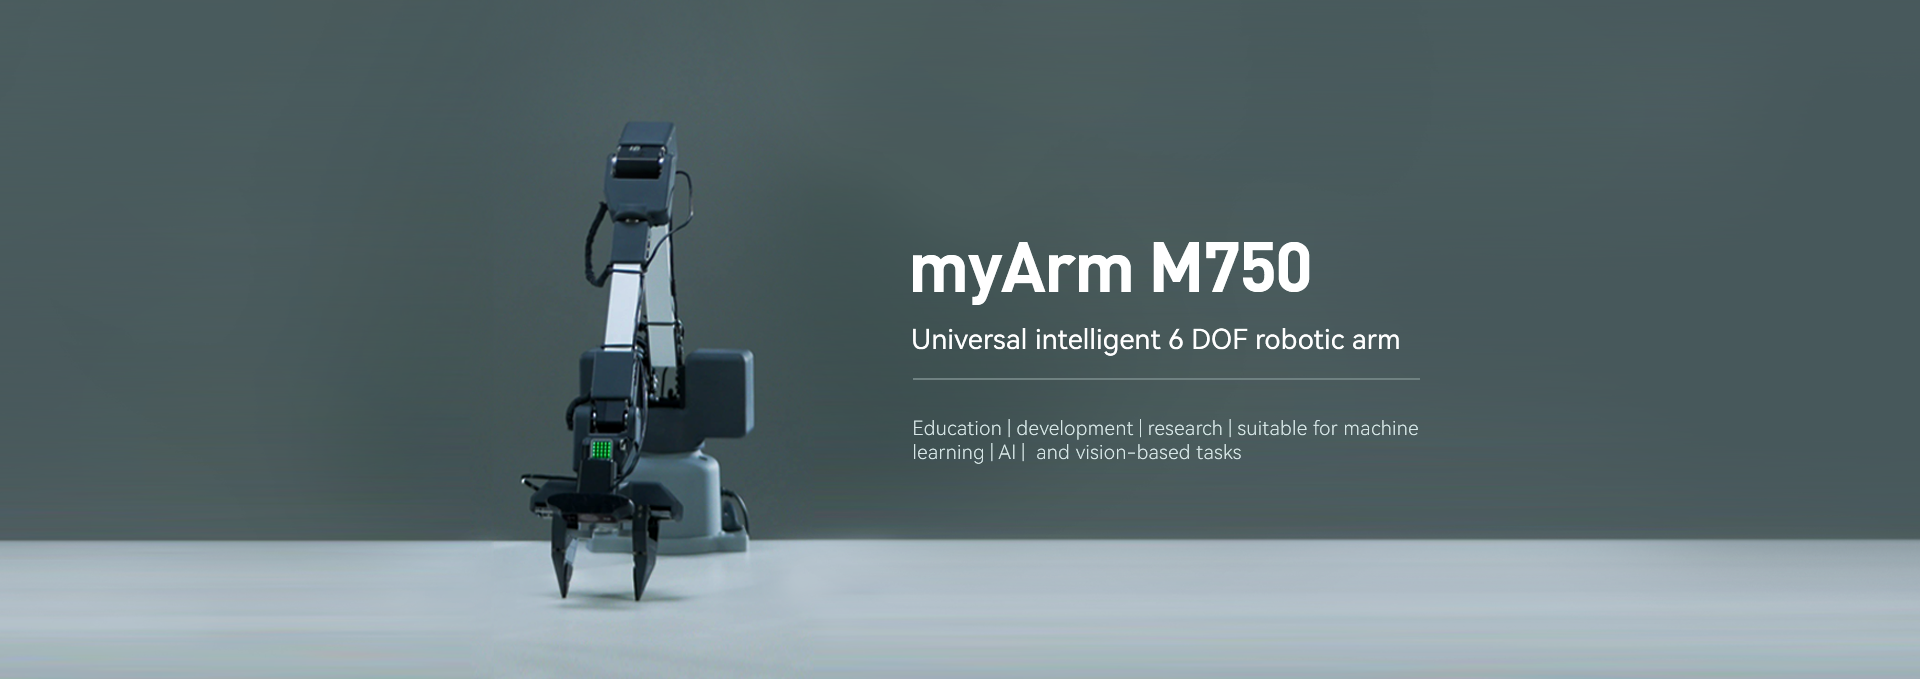 myArm M750 en